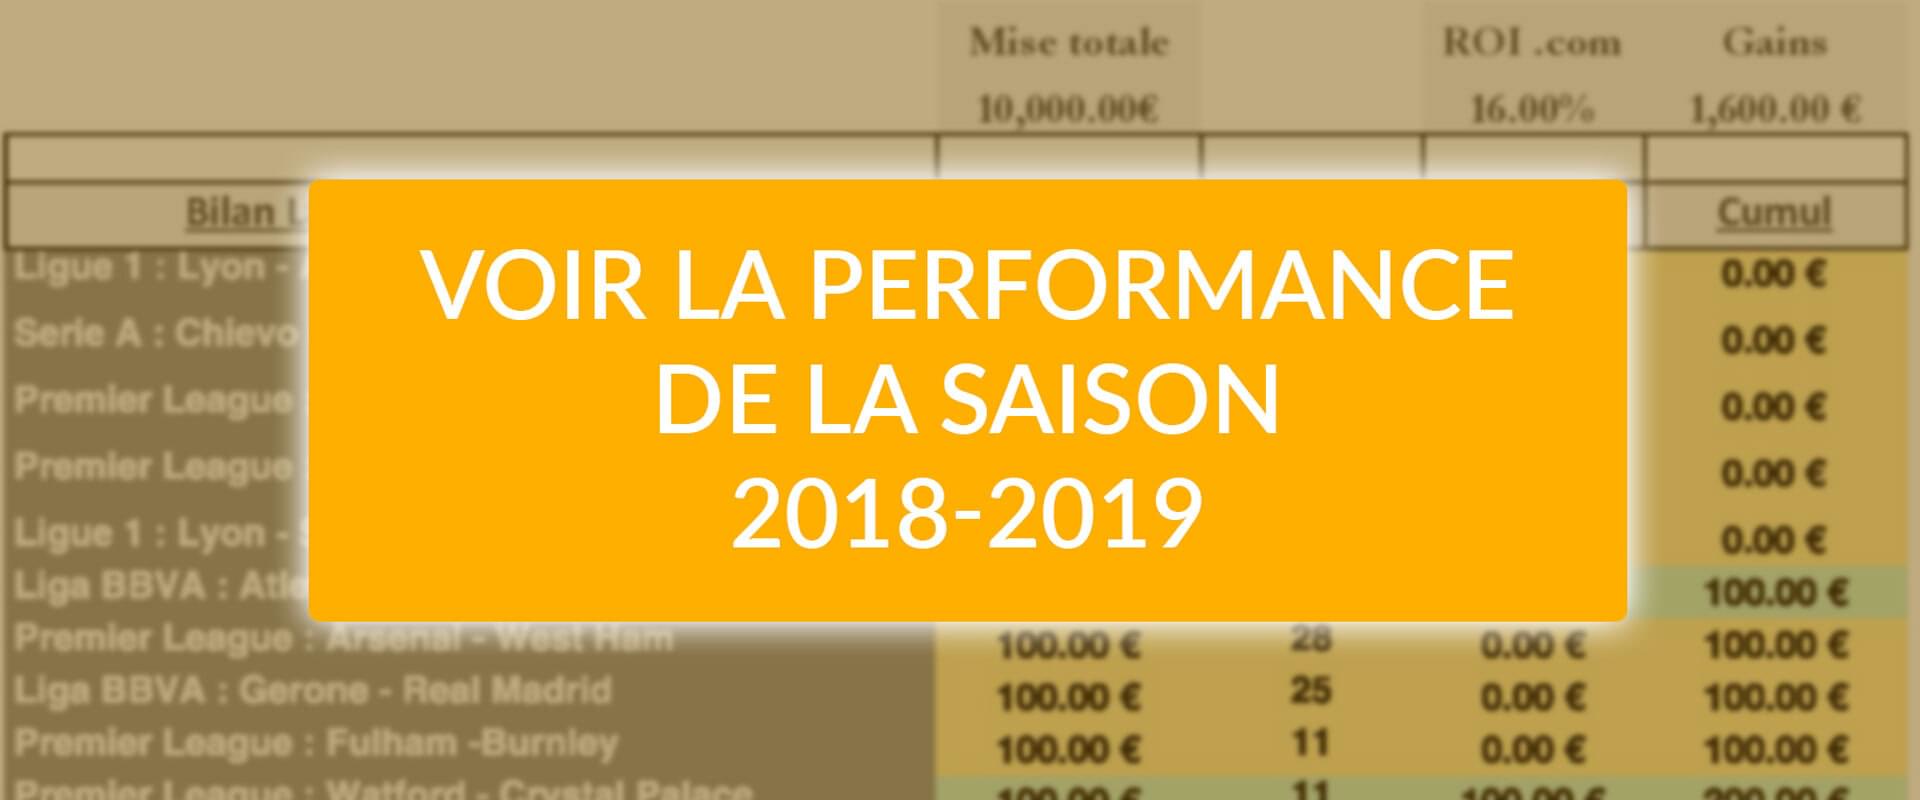 Bilan Lay 0-0 saison 2018-2019 - 3